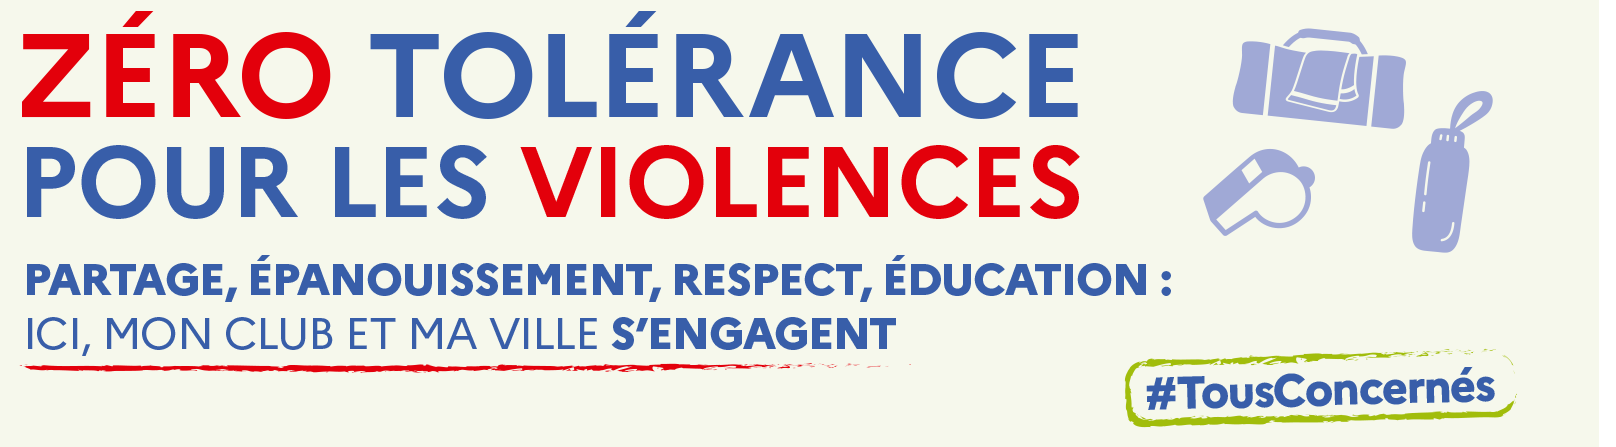 flyers zero tolerance pour les violences